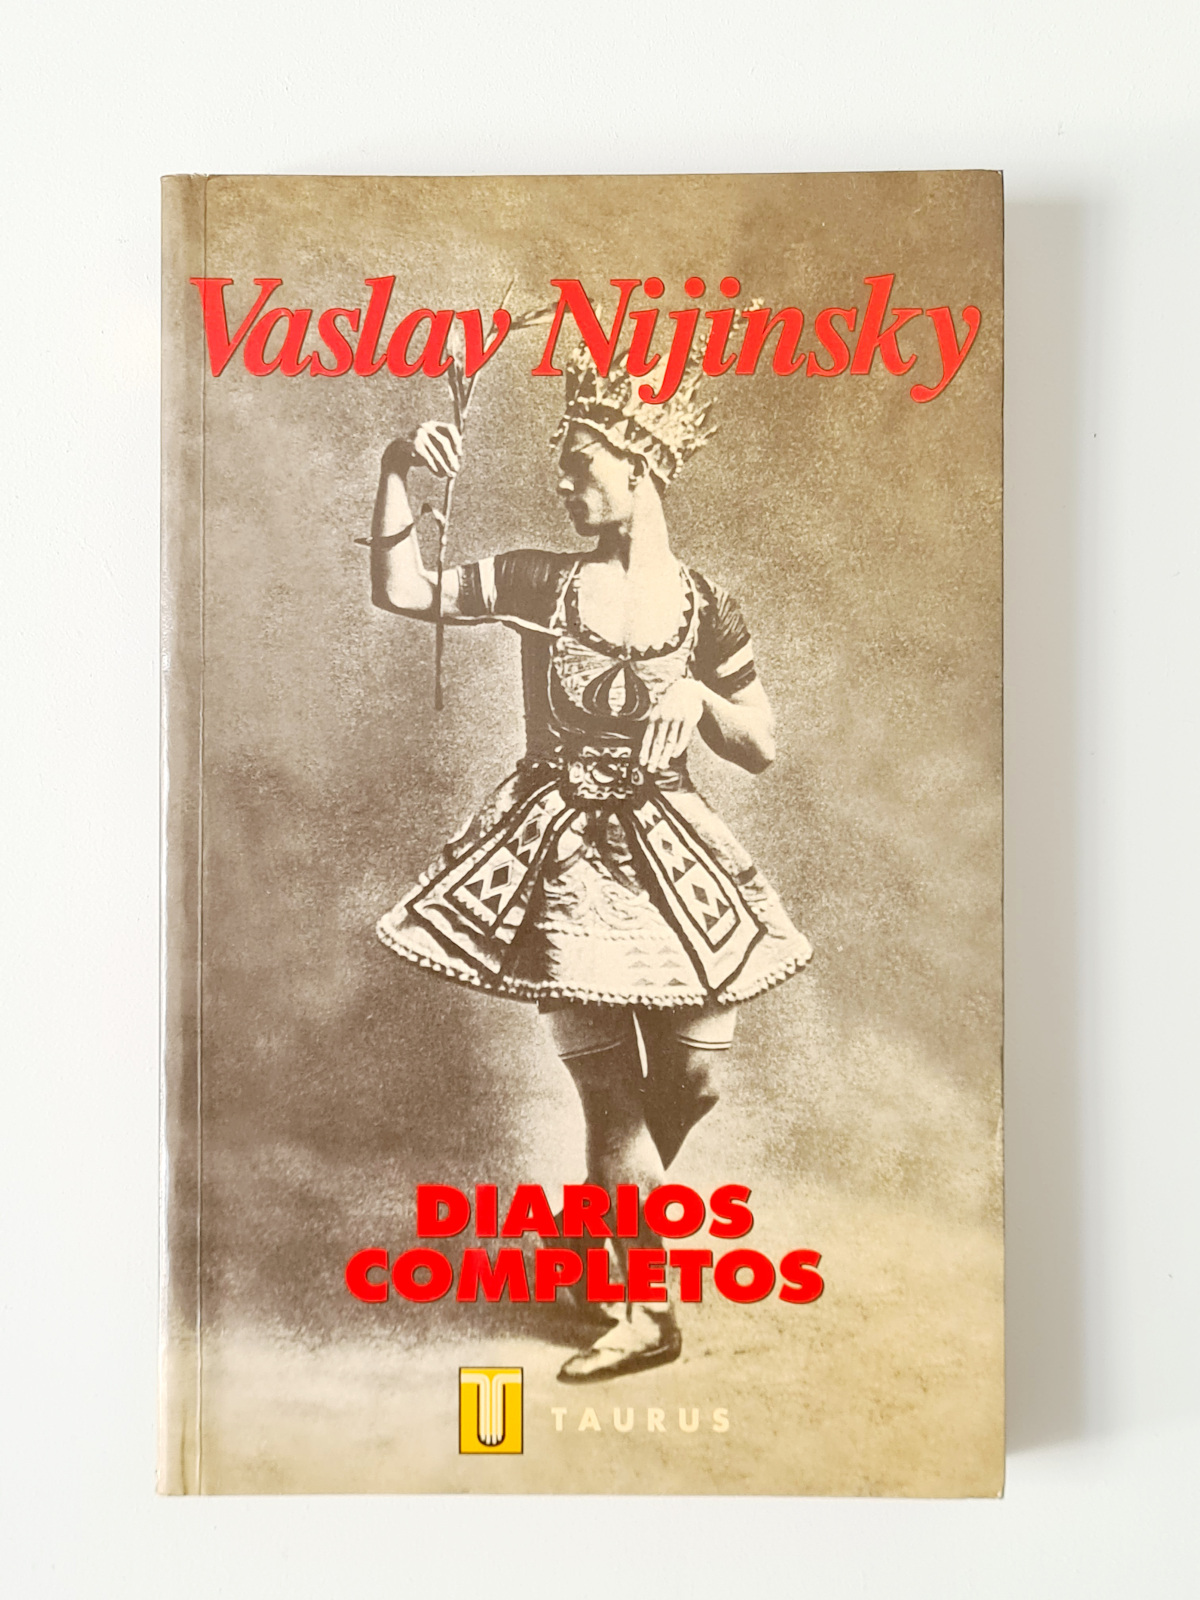 Diarios completos por Vaslav Nijinsky